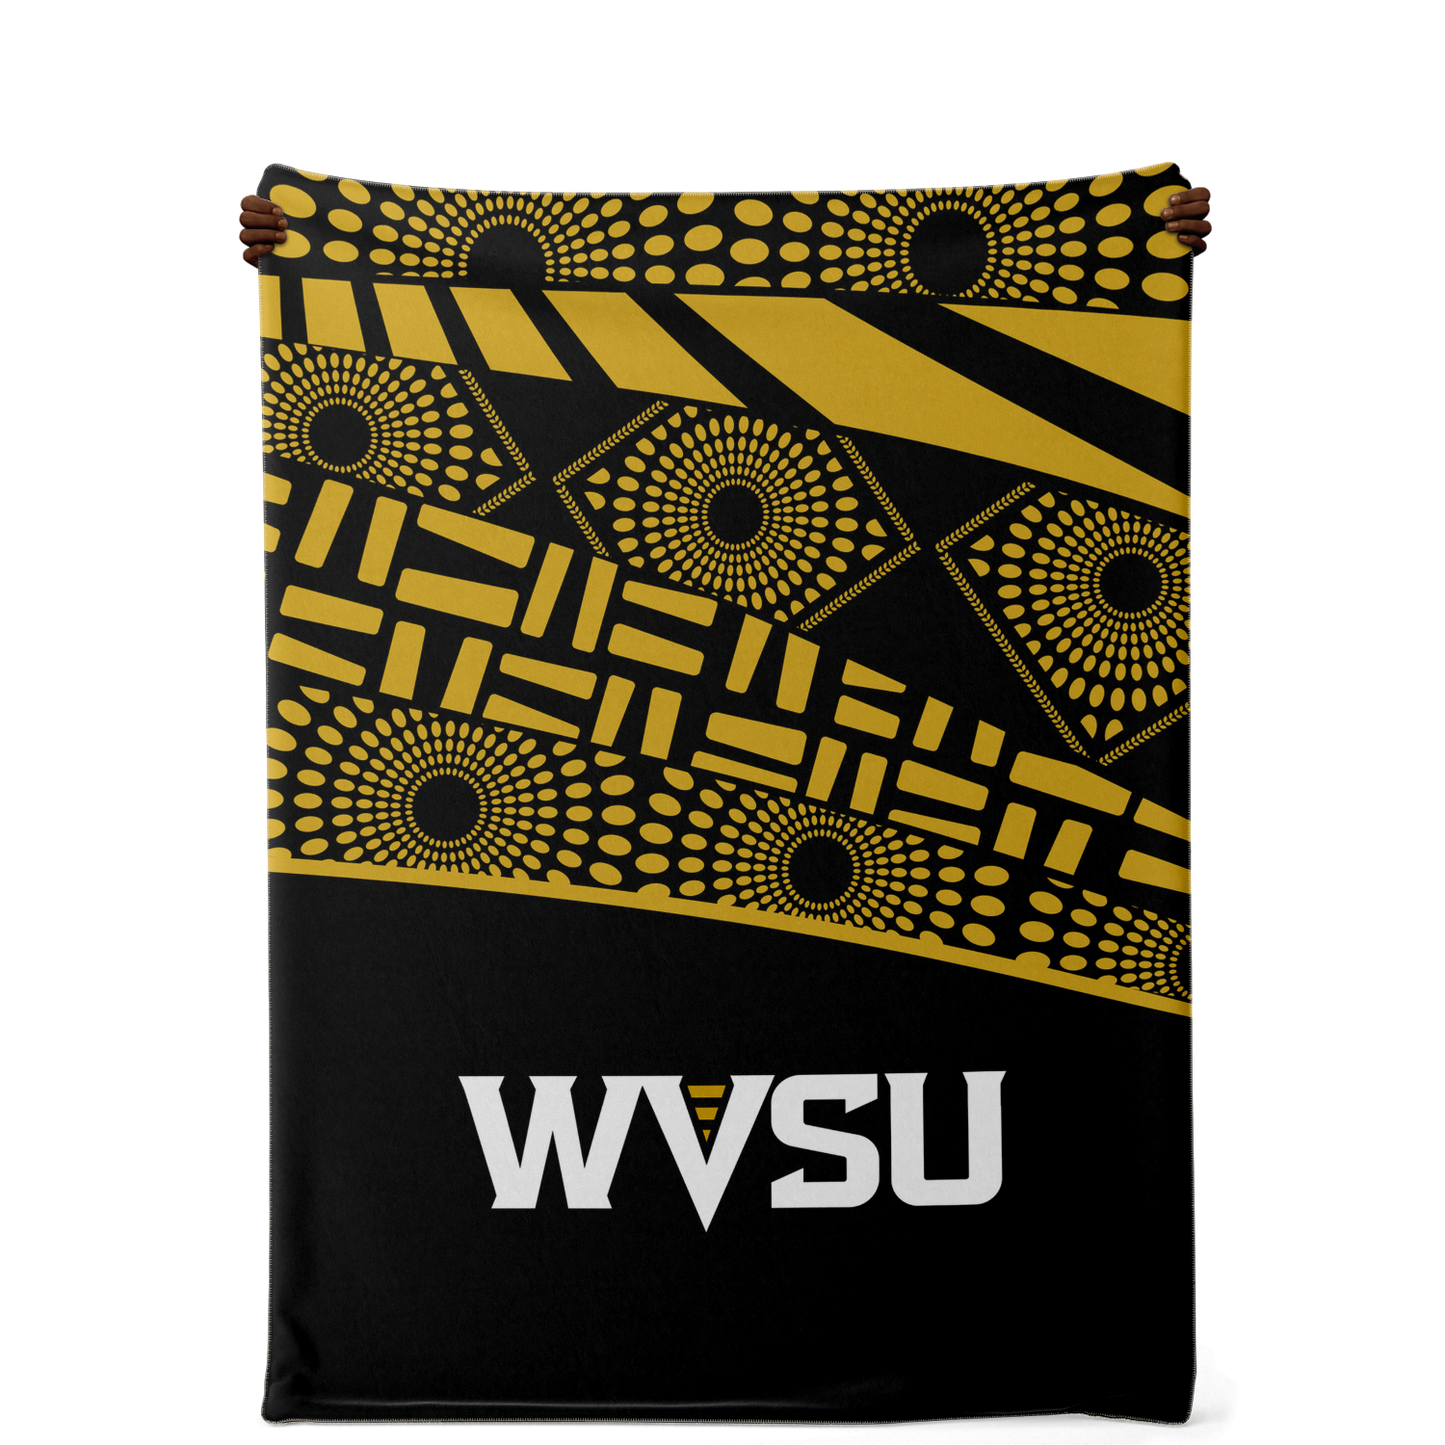 WVSU Yellow Jackets Microfleece Blanket